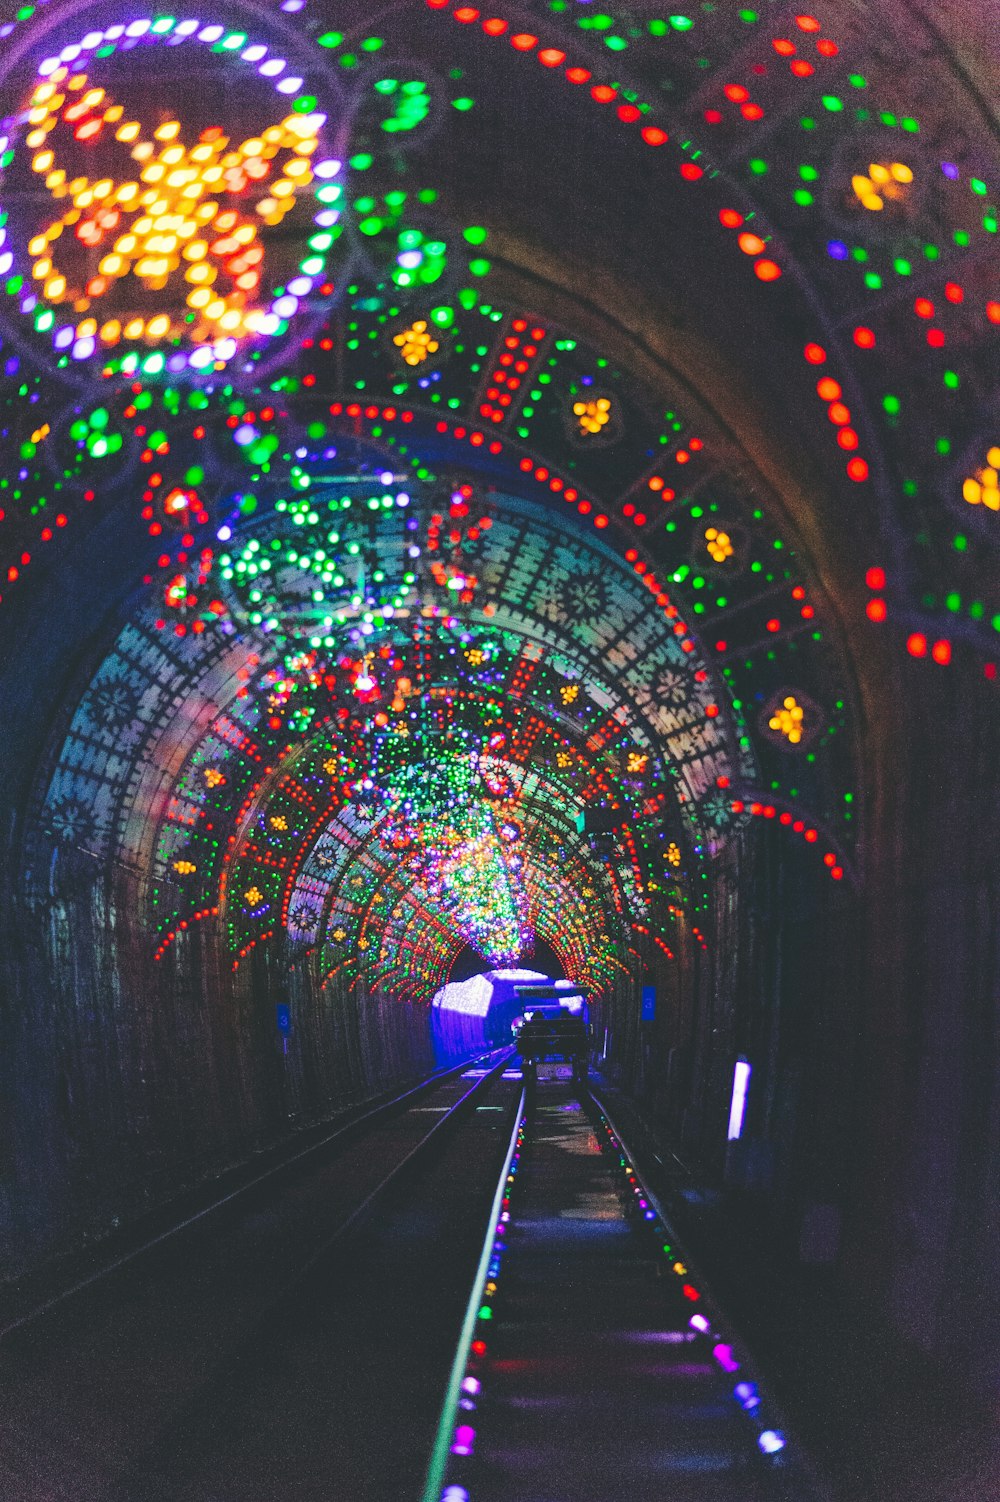 tren ferroviario rodeado de guirnaldas de luces